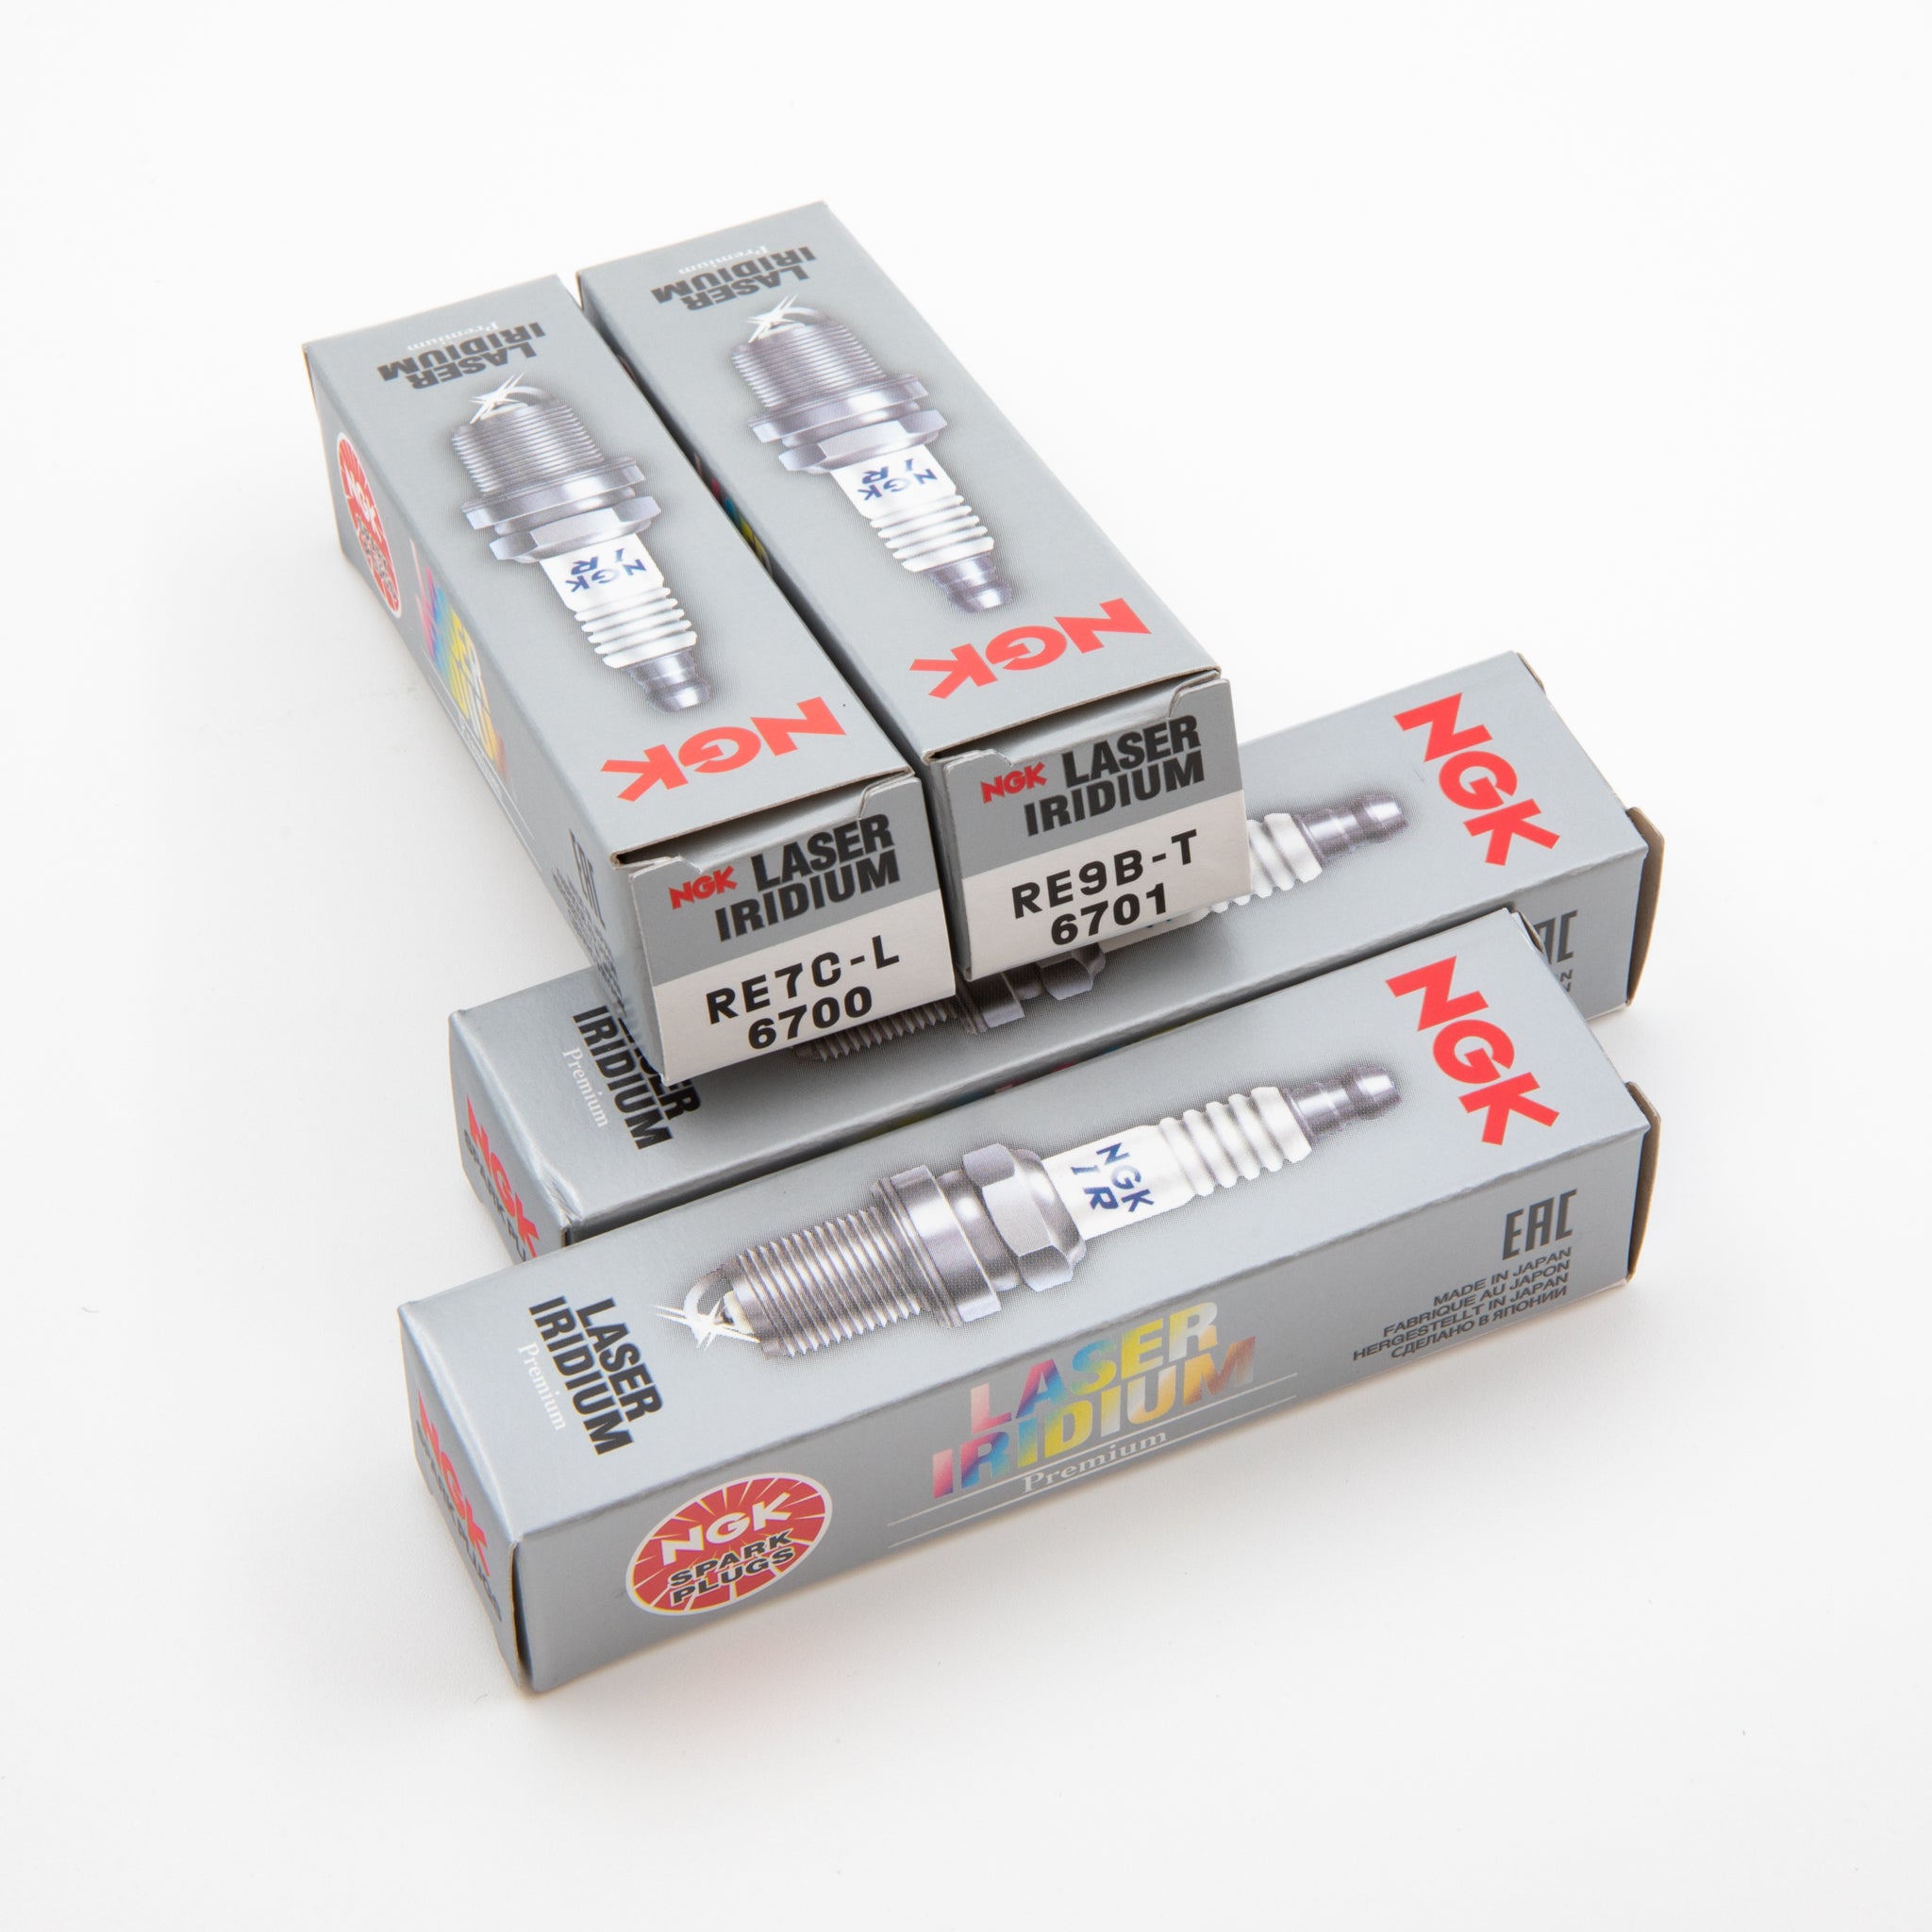 NGK Laser Iridium Spark Plug Set - RX8